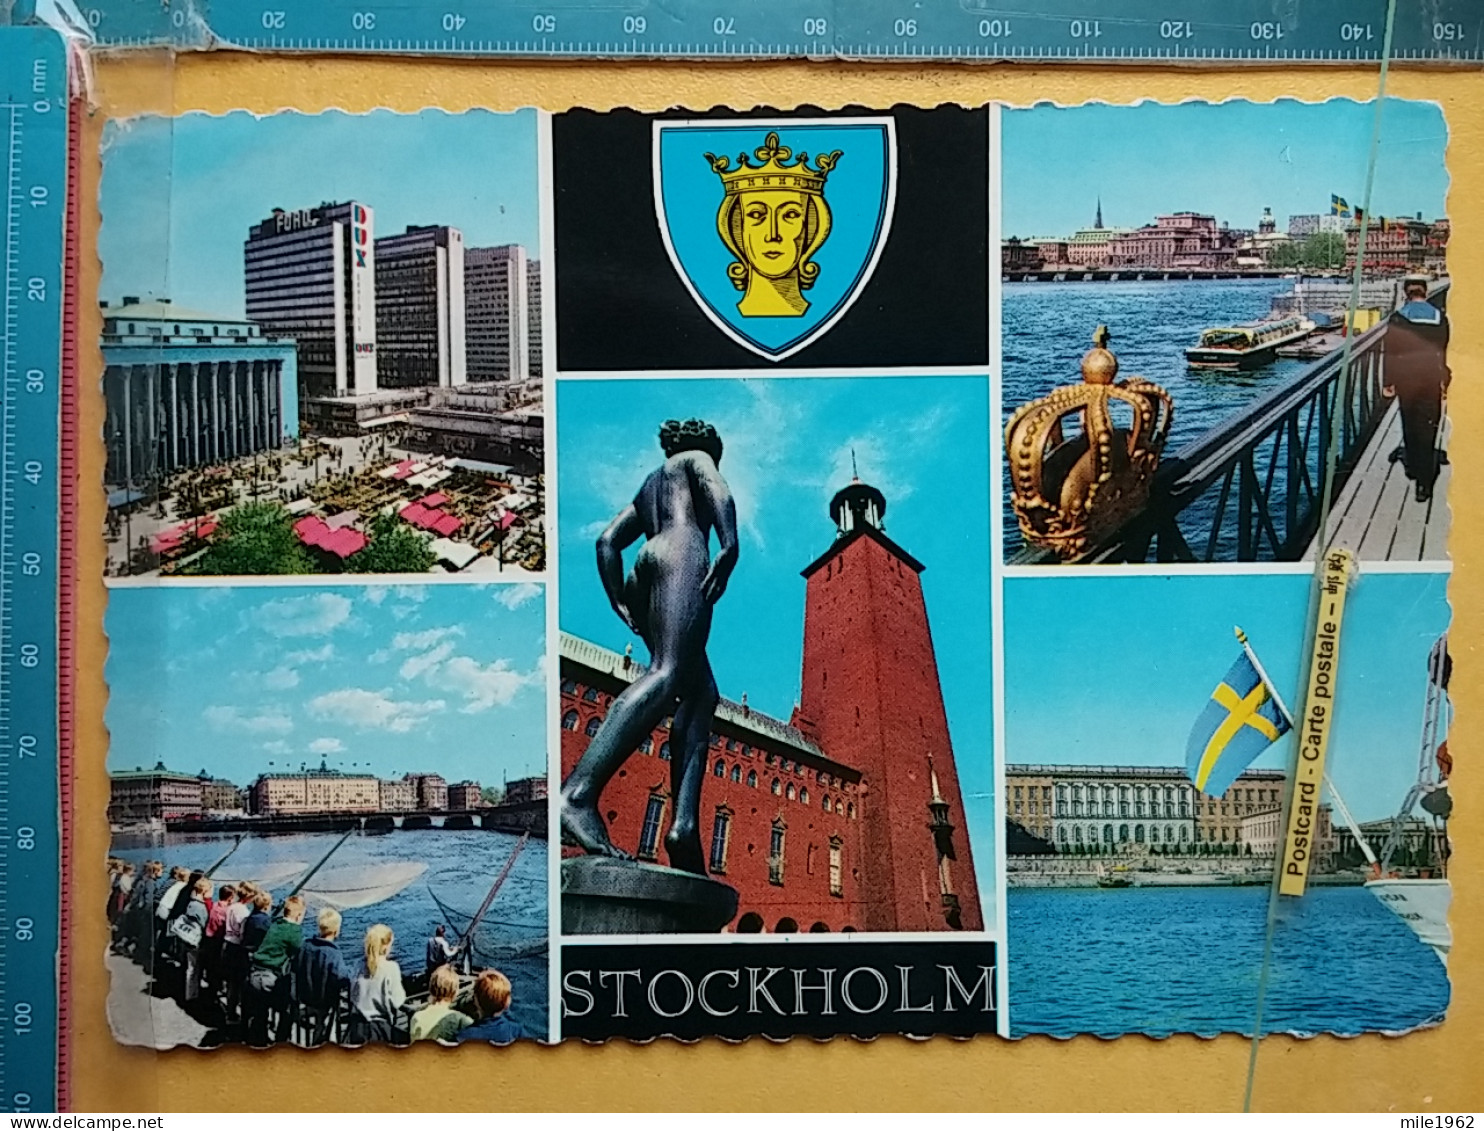 KOV 830-11 - STOCKHOLM, Sweden,  - Suède